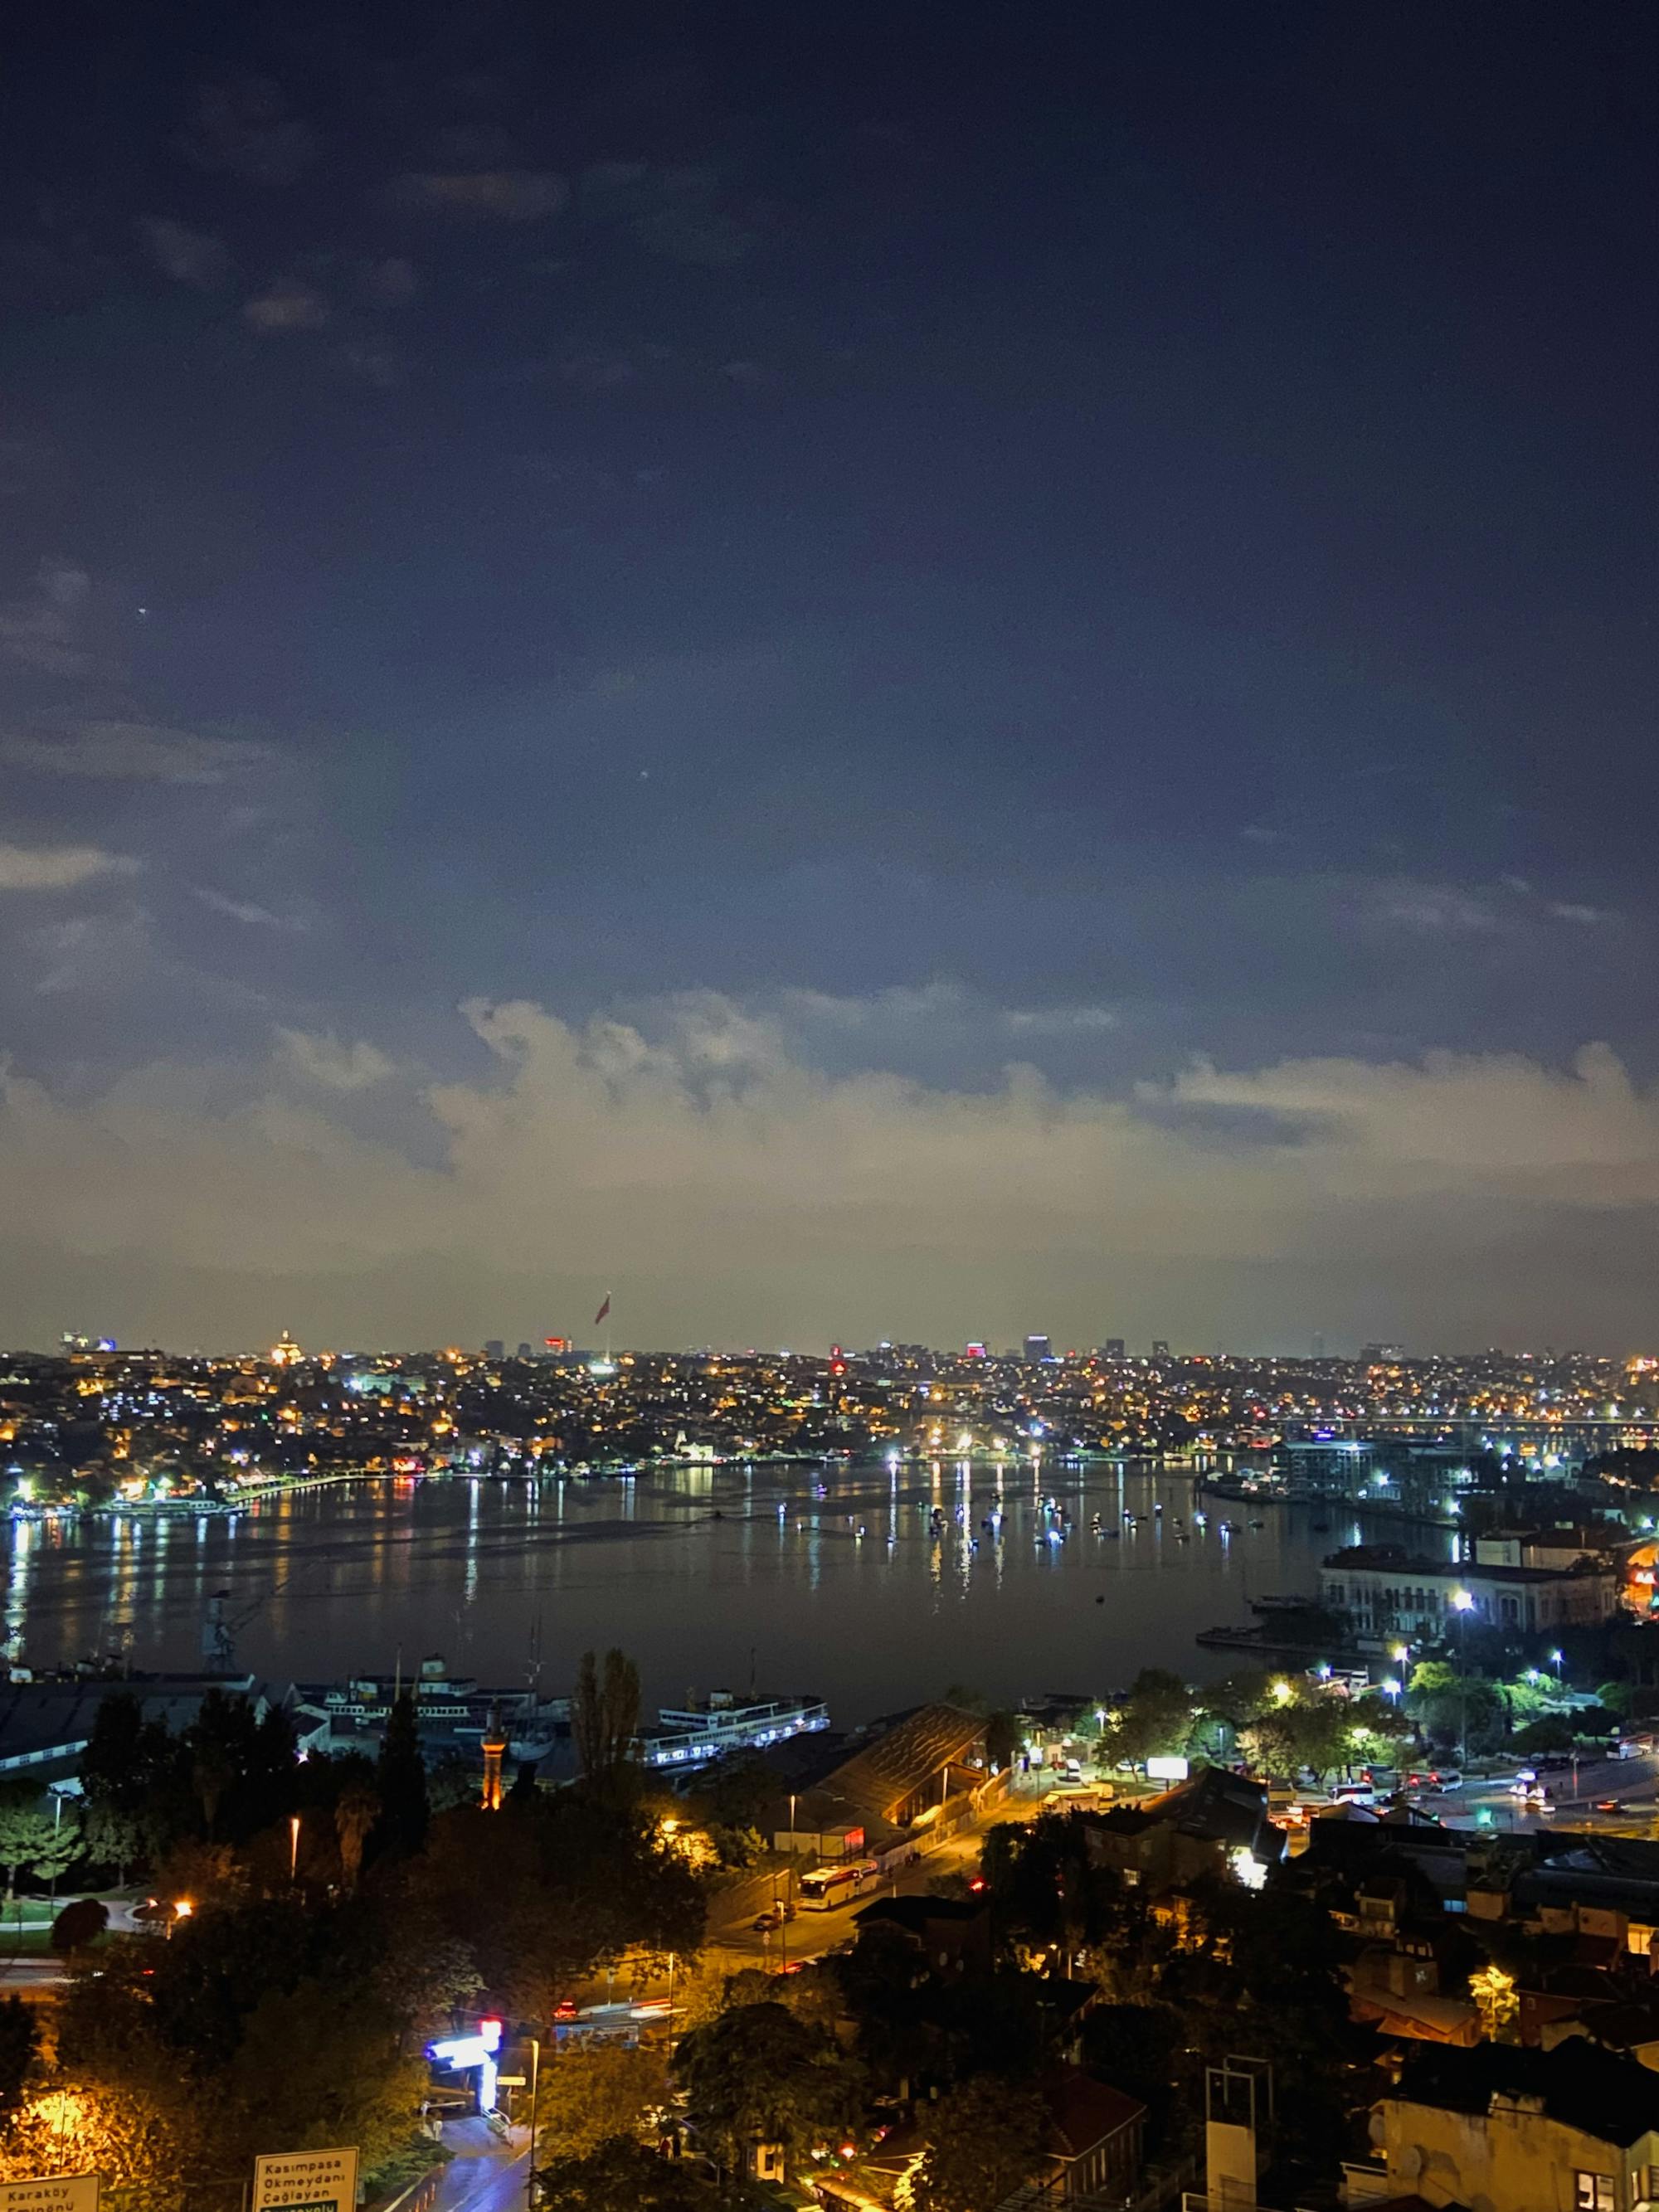 der gigantische Ausblick auf Istanbul, den Bosporus und die vielen Lichter, die in der Nacht erleuchten. 